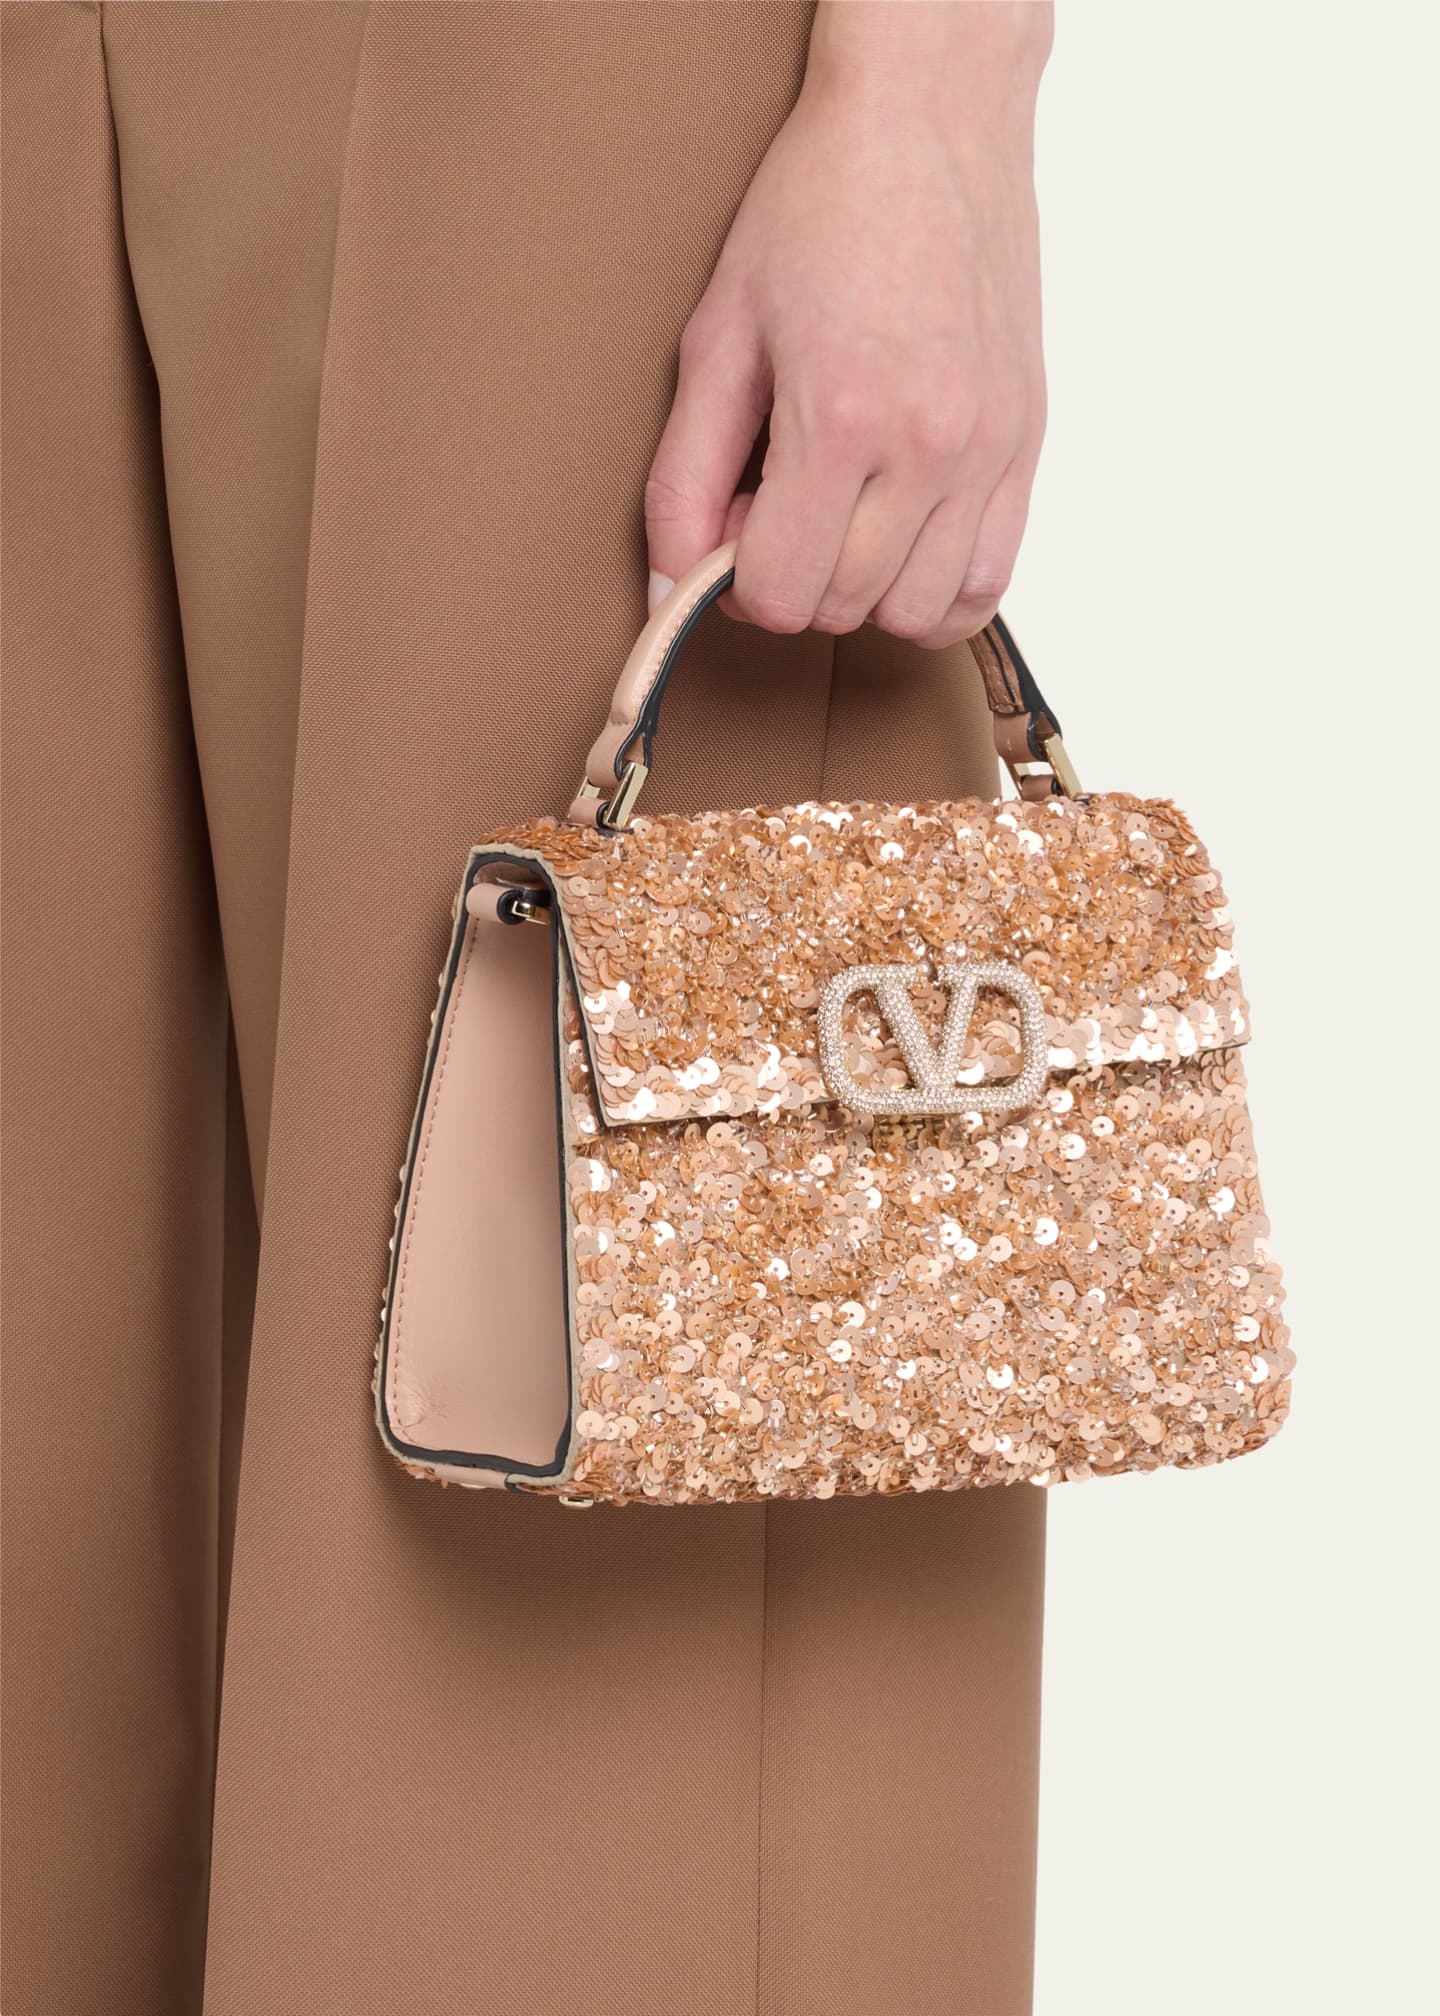 Valentino Garavani Embellished Vsling Top-Handle Bag - Gold - One Size